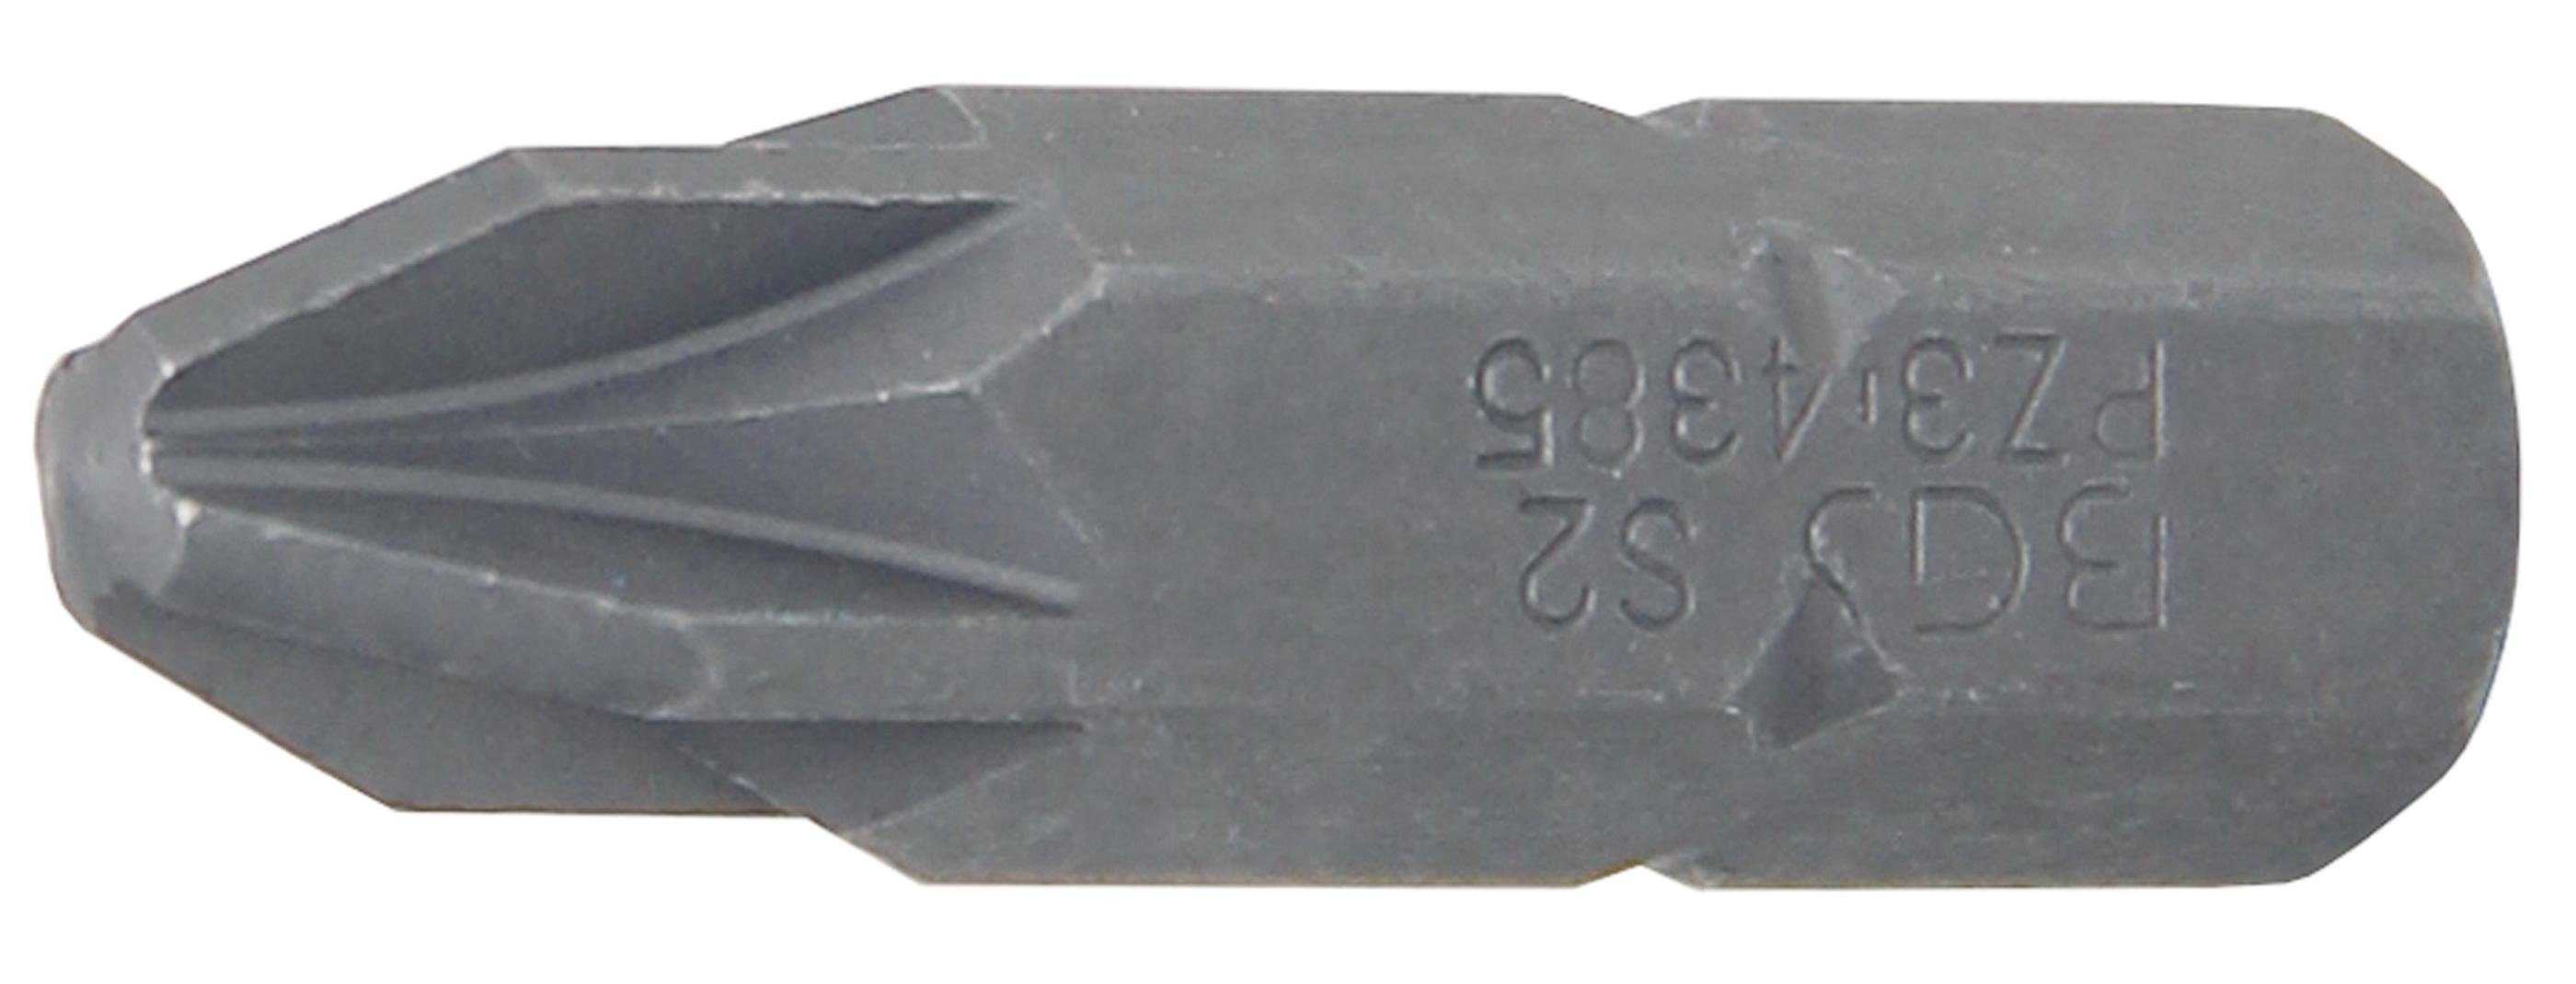 BGS technic Bit-Schraubendreher Bit, Antrieb Außensechskant 8 mm (5/16), Kreuzschlitz PZ3